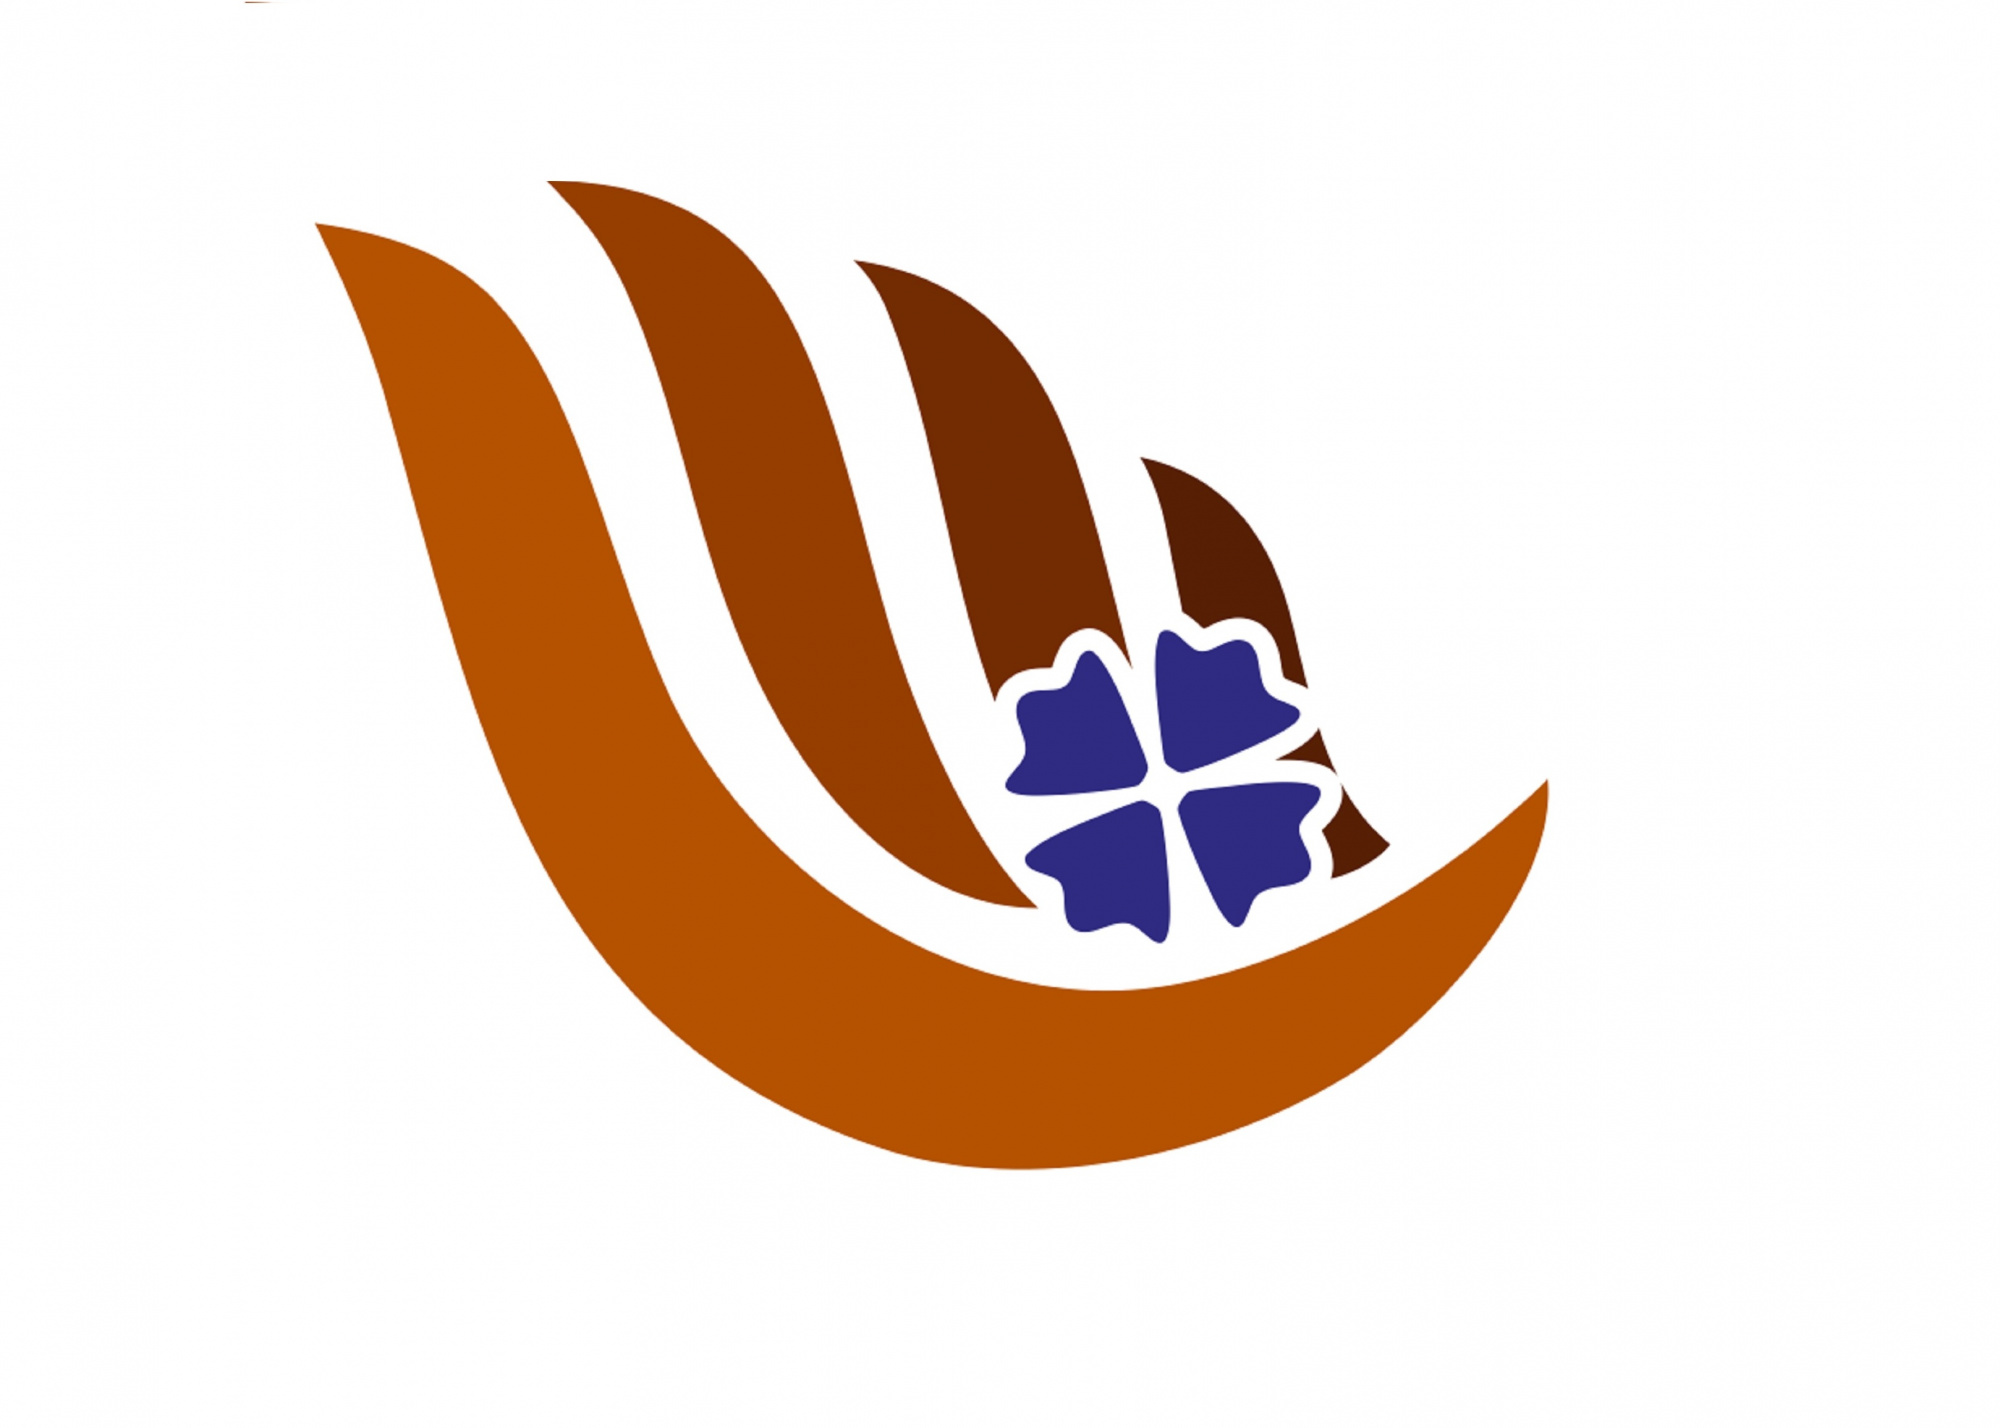 Логотип нотариальной деятельности на фоне.jpg